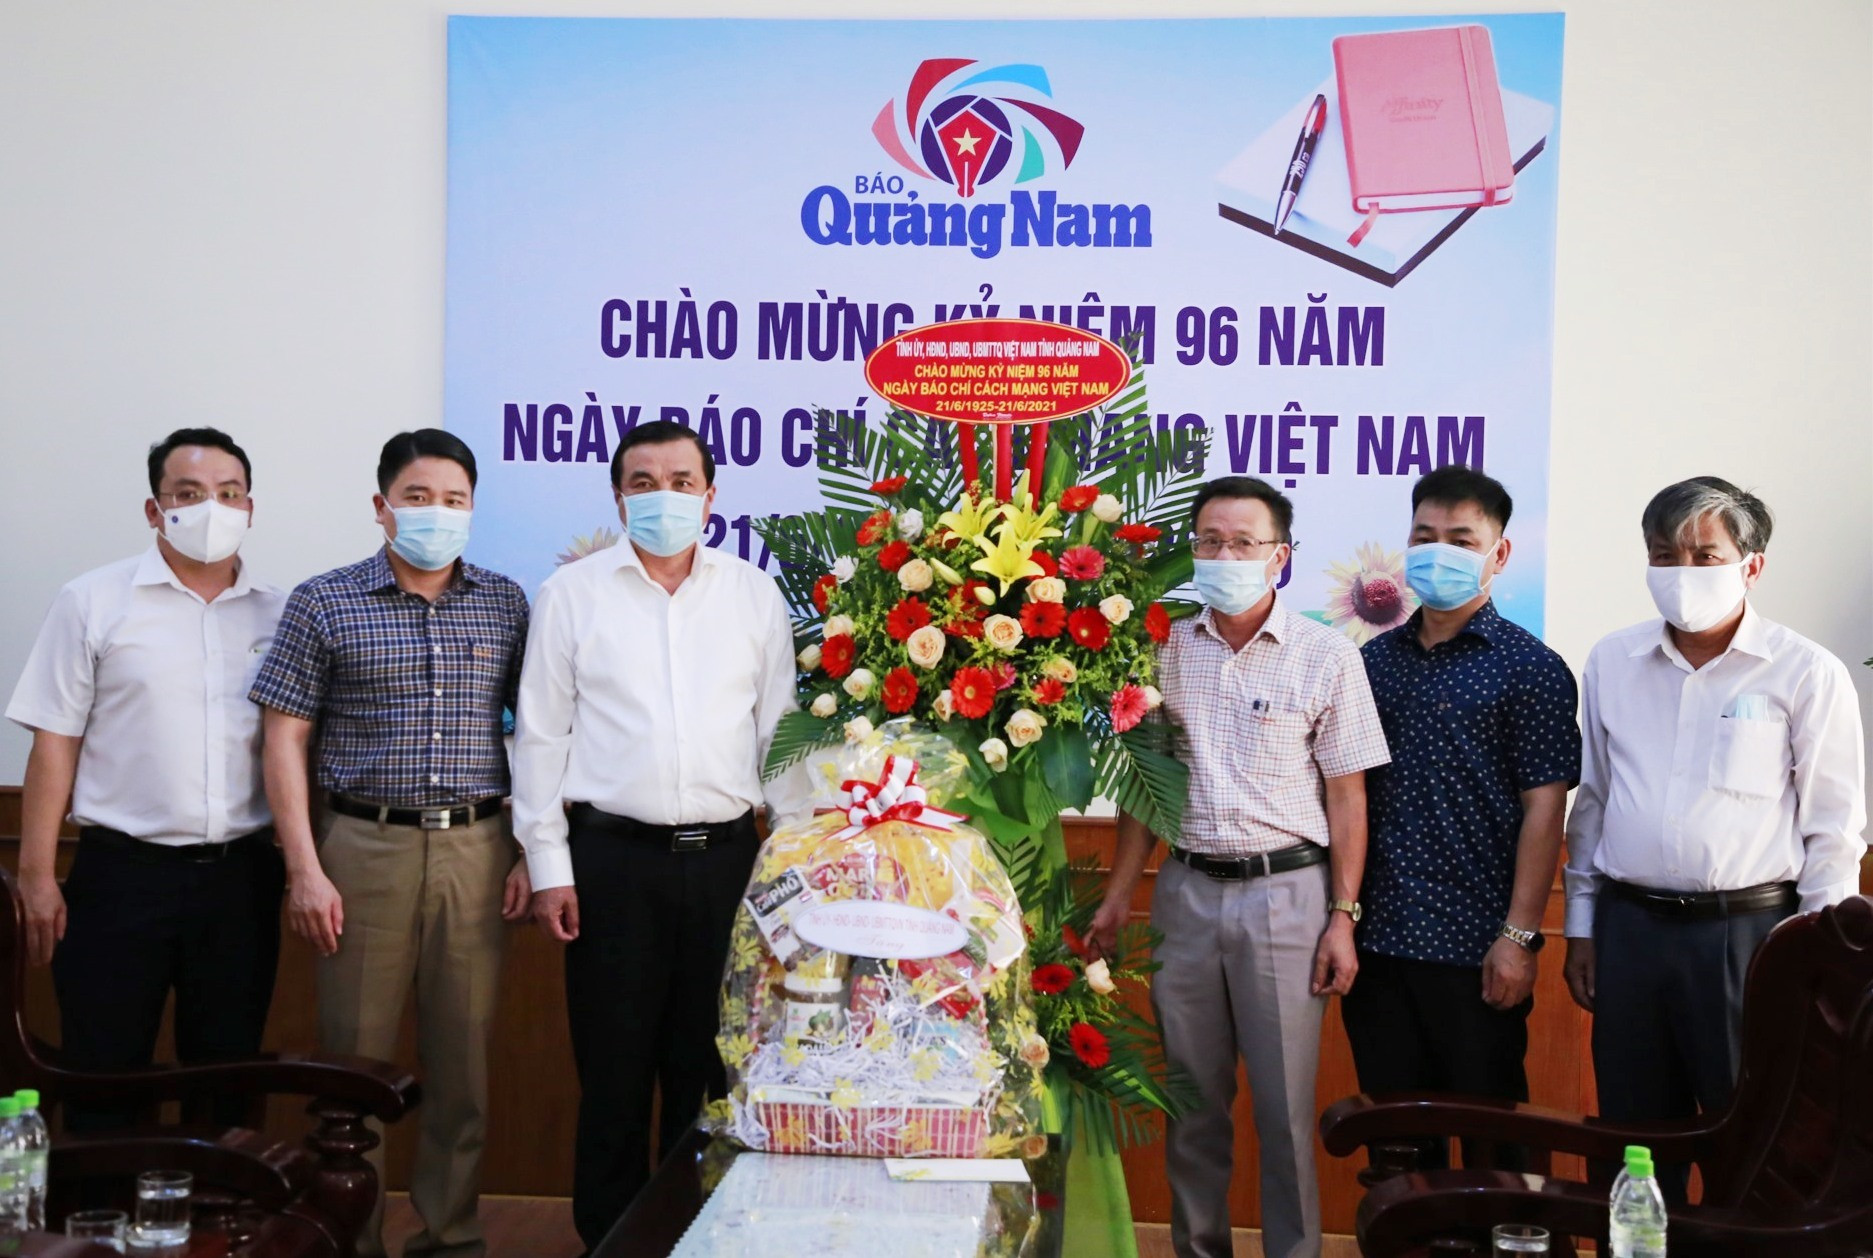 Đồng chí Phan Việt Cường và đoàn công tác tặng lẵng hoa, quà cho tập thể Báo Quảng Nam. Ảnh: T.C